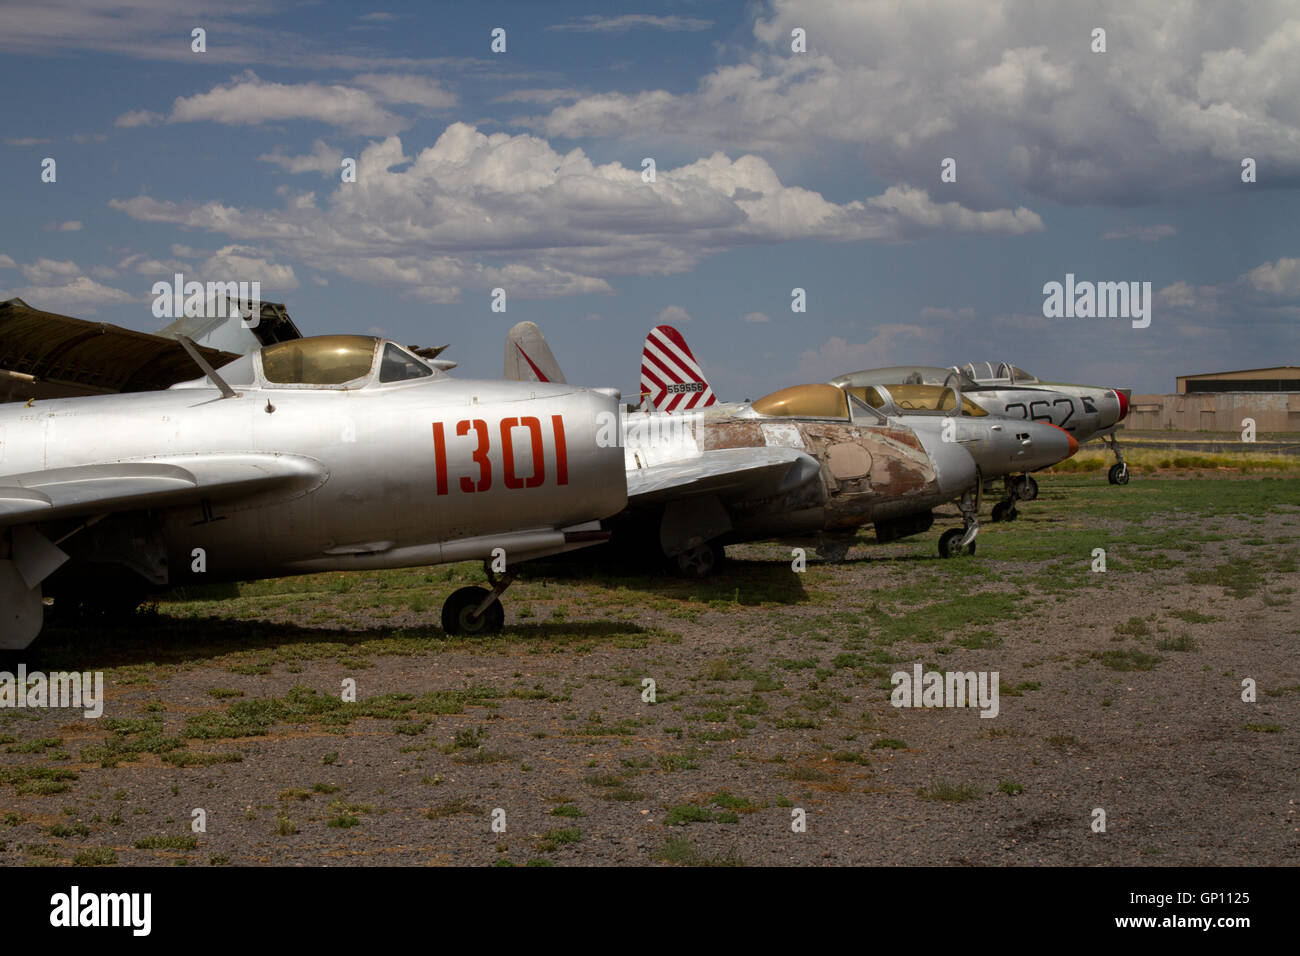 À l'aéronef du musée Planes of Fame. De l'Arizona. USA Banque D'Images